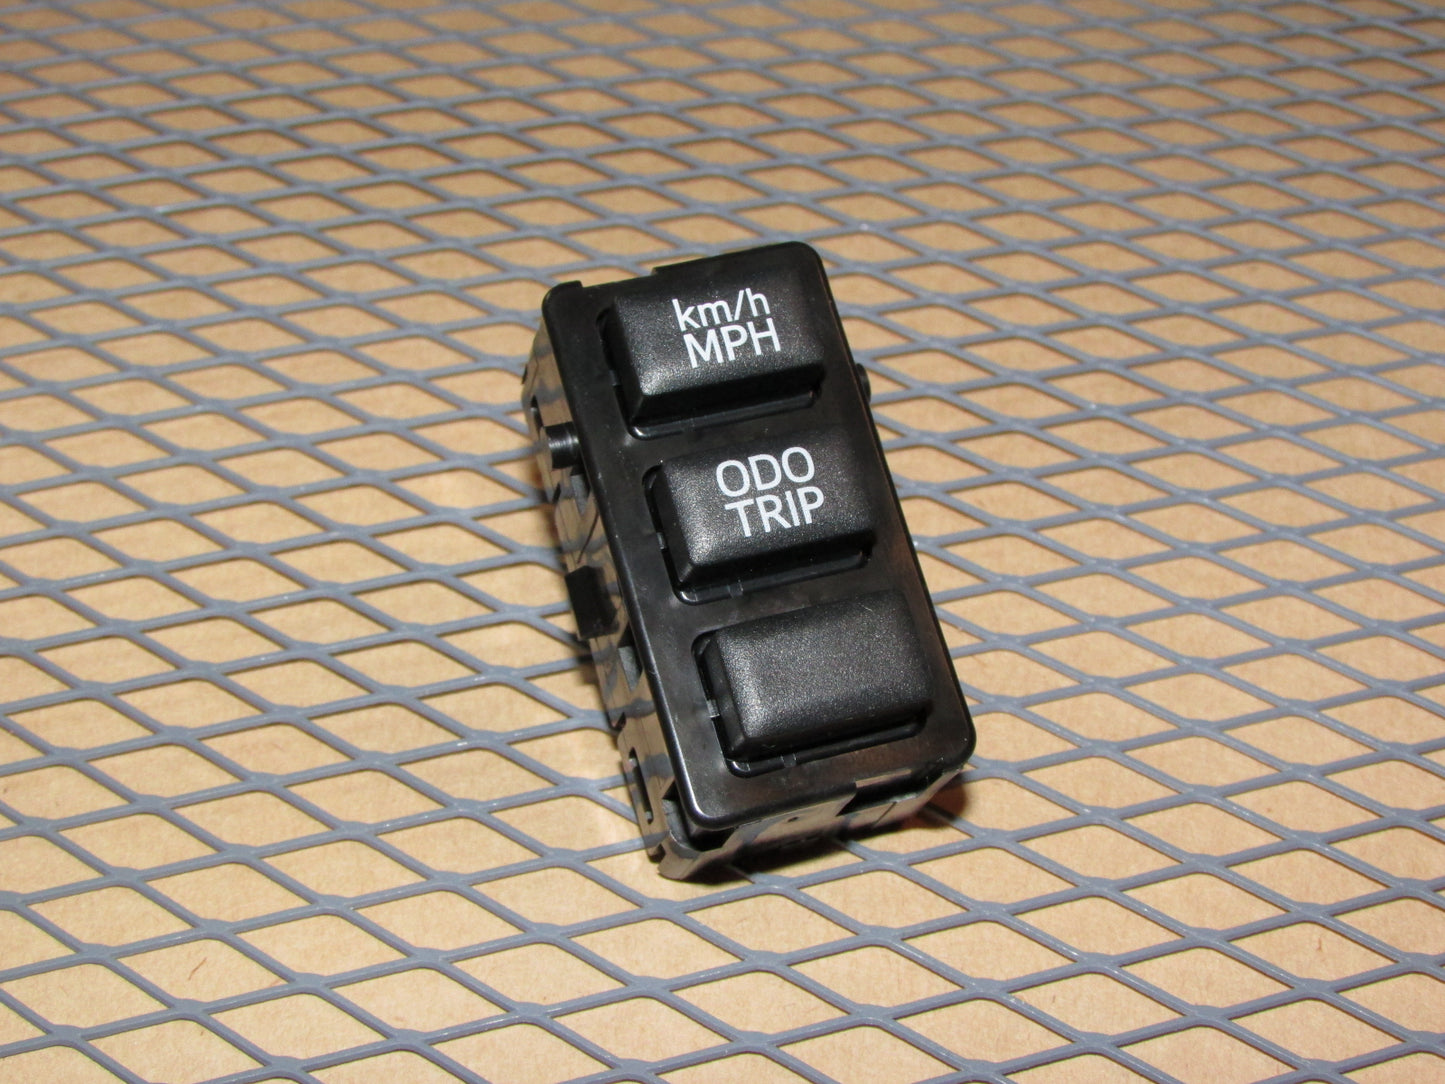 13 14 15 16 Subaru BRZ OEM Odometer Km/h MPH & ODO Trip Reset Switch